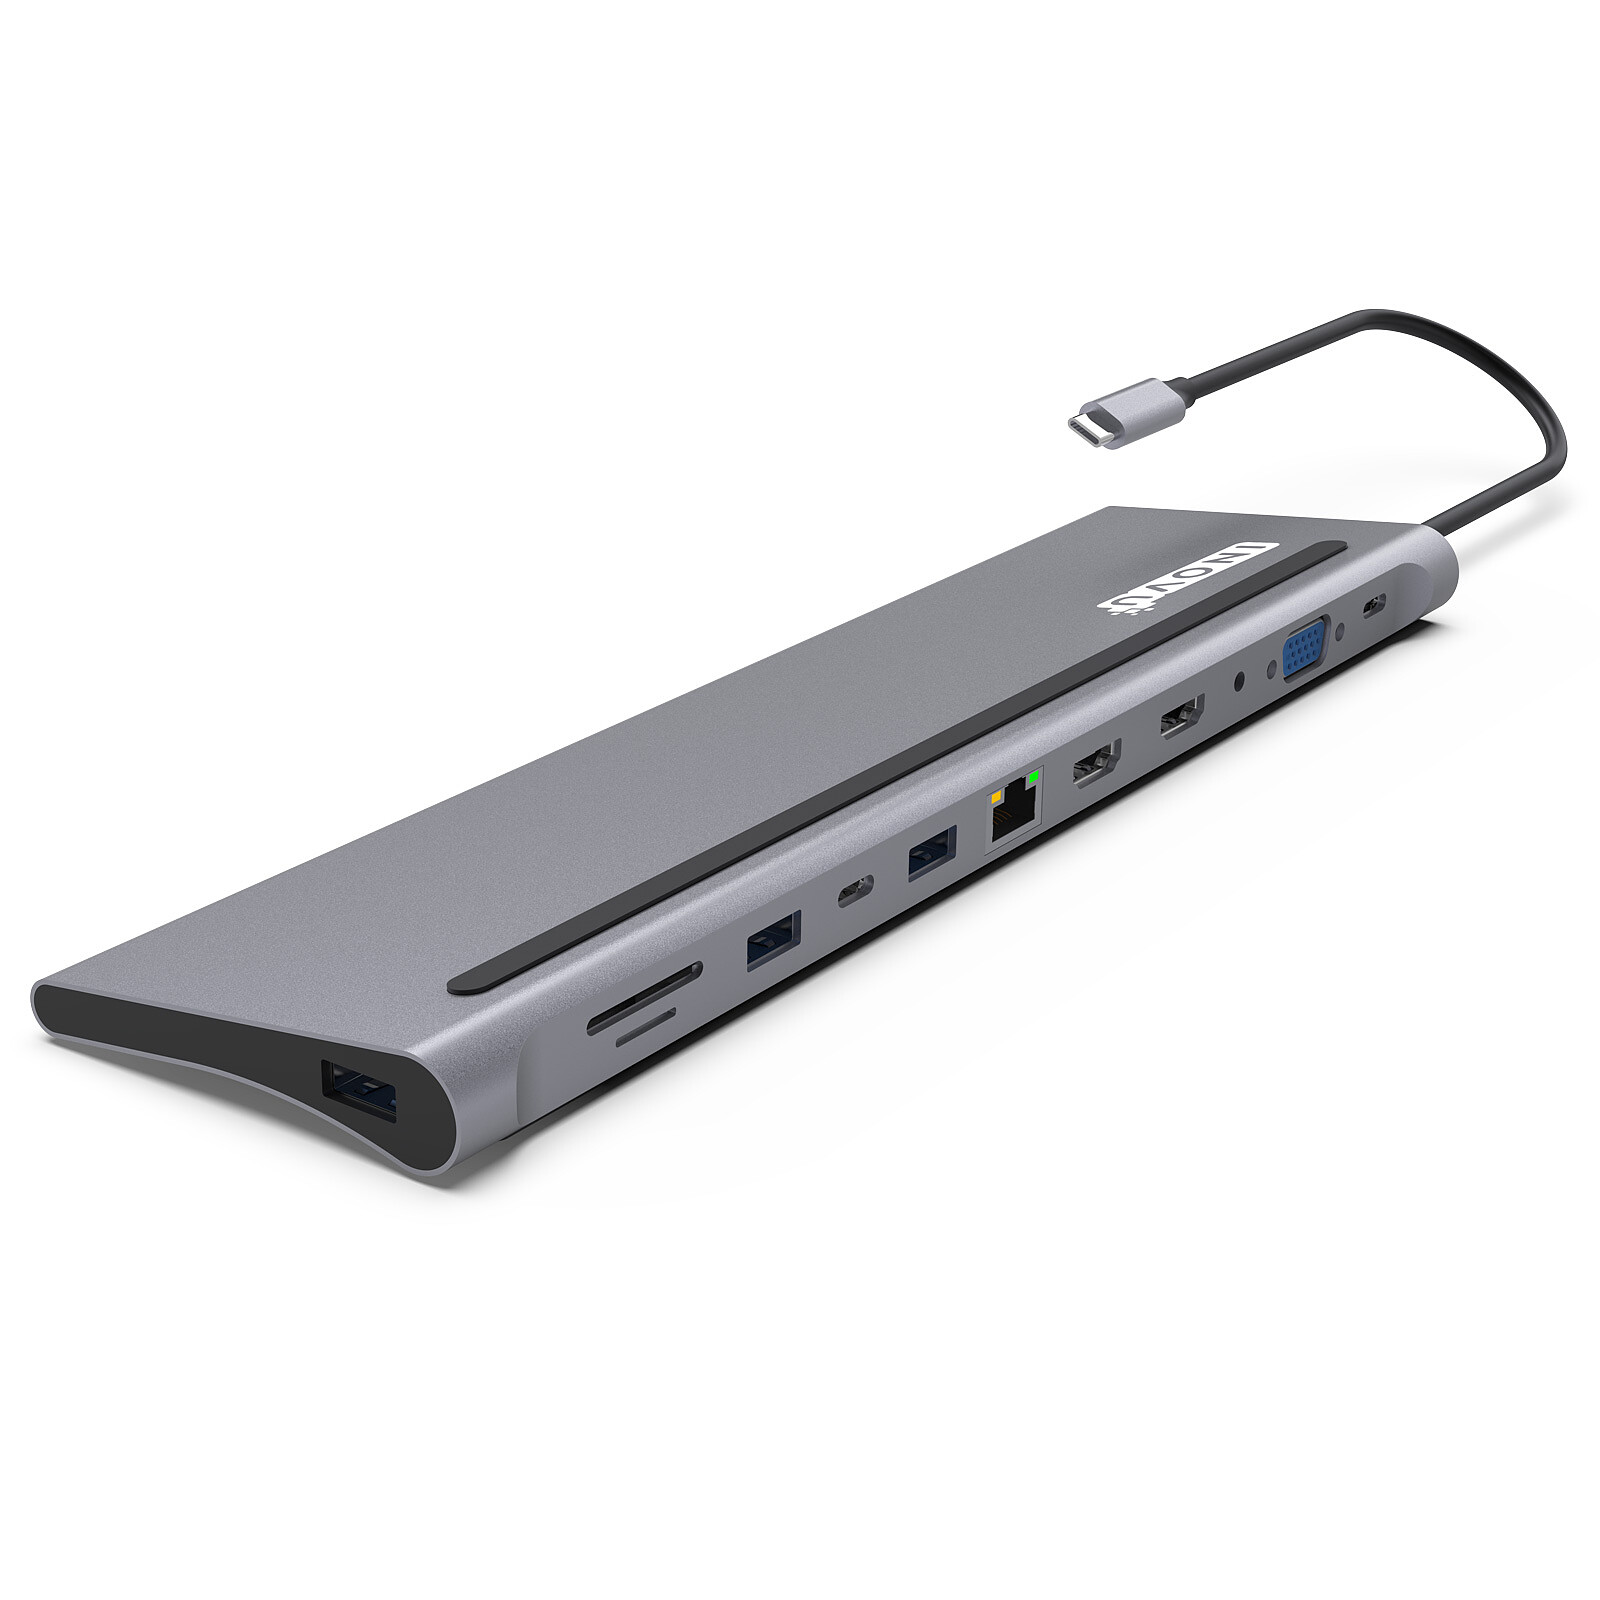 Mini station d'accueil USB 3.0 universelle pour PC portable avec VGA,  Gigabit Ethernet, USB 3.0